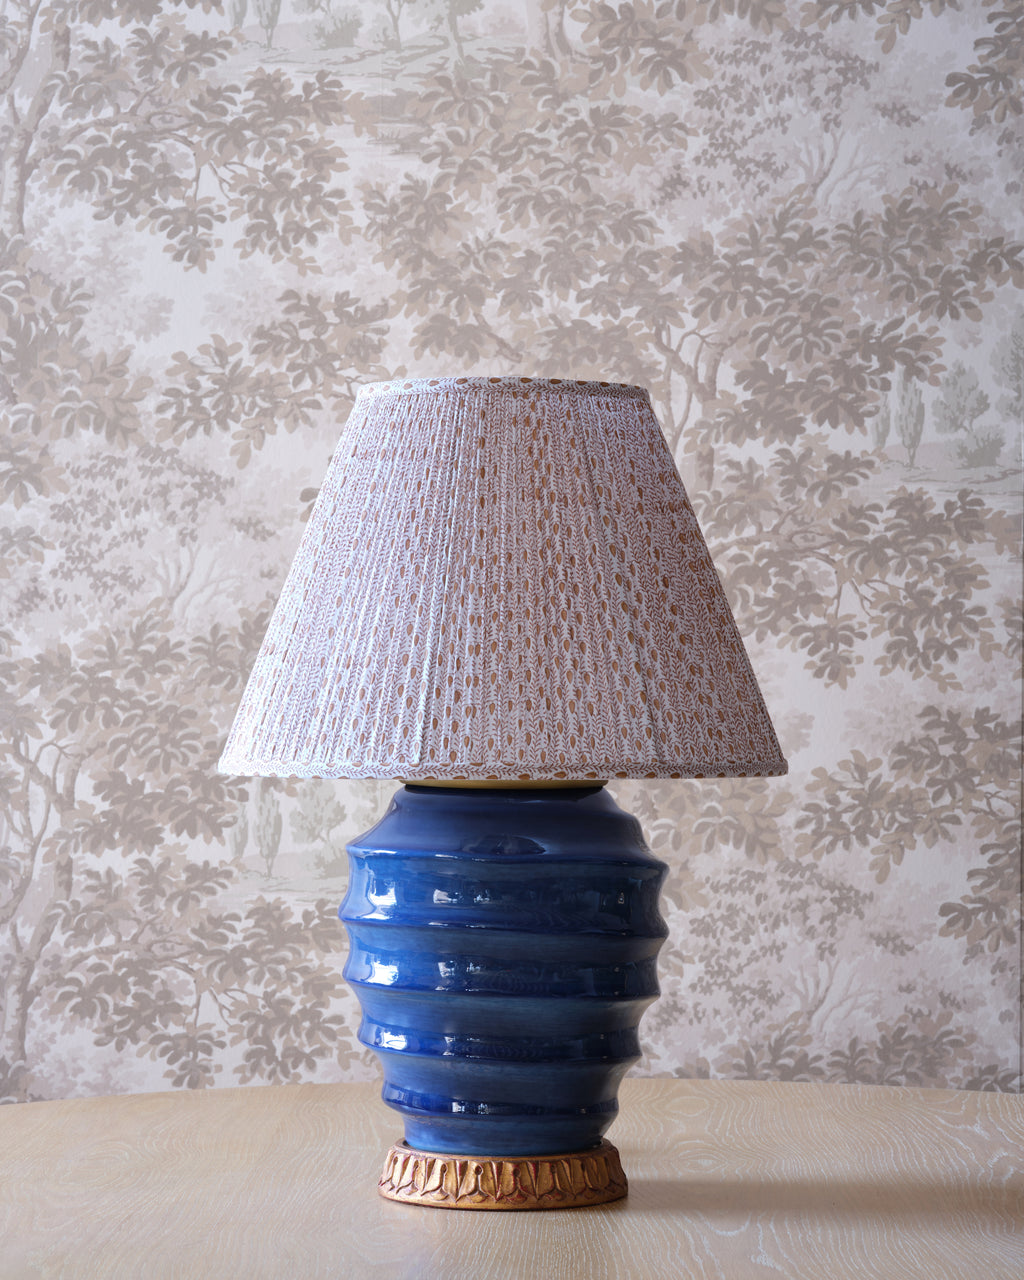 putnam lampshade (fall)